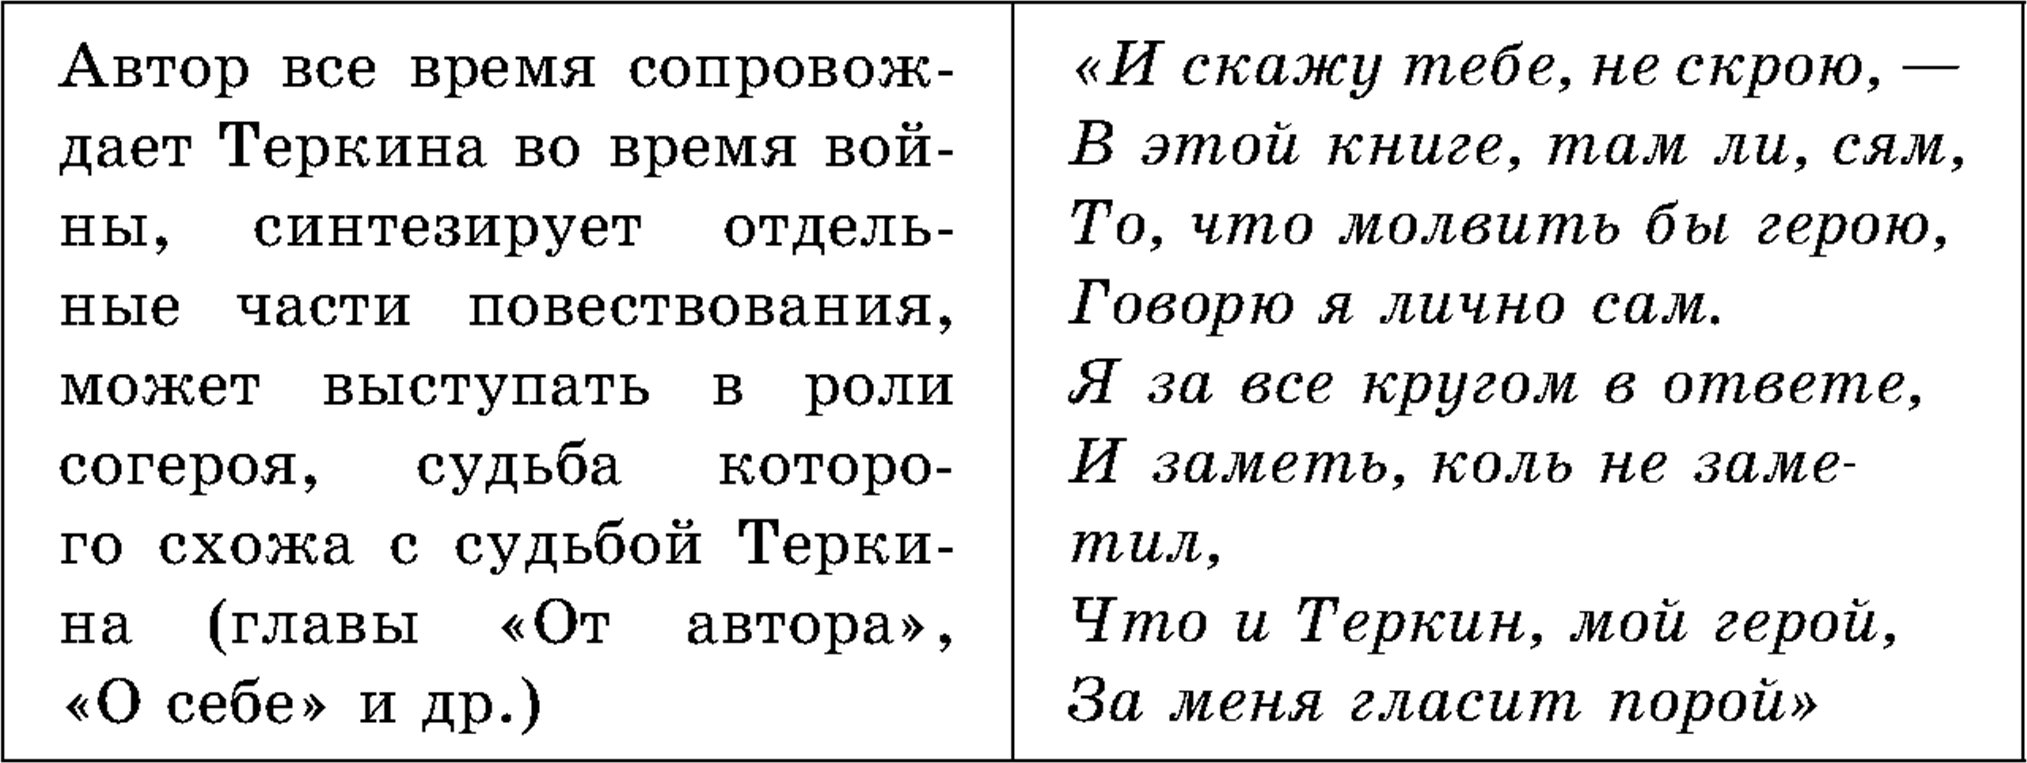 Образ автора, поэма «Василий Теркин»